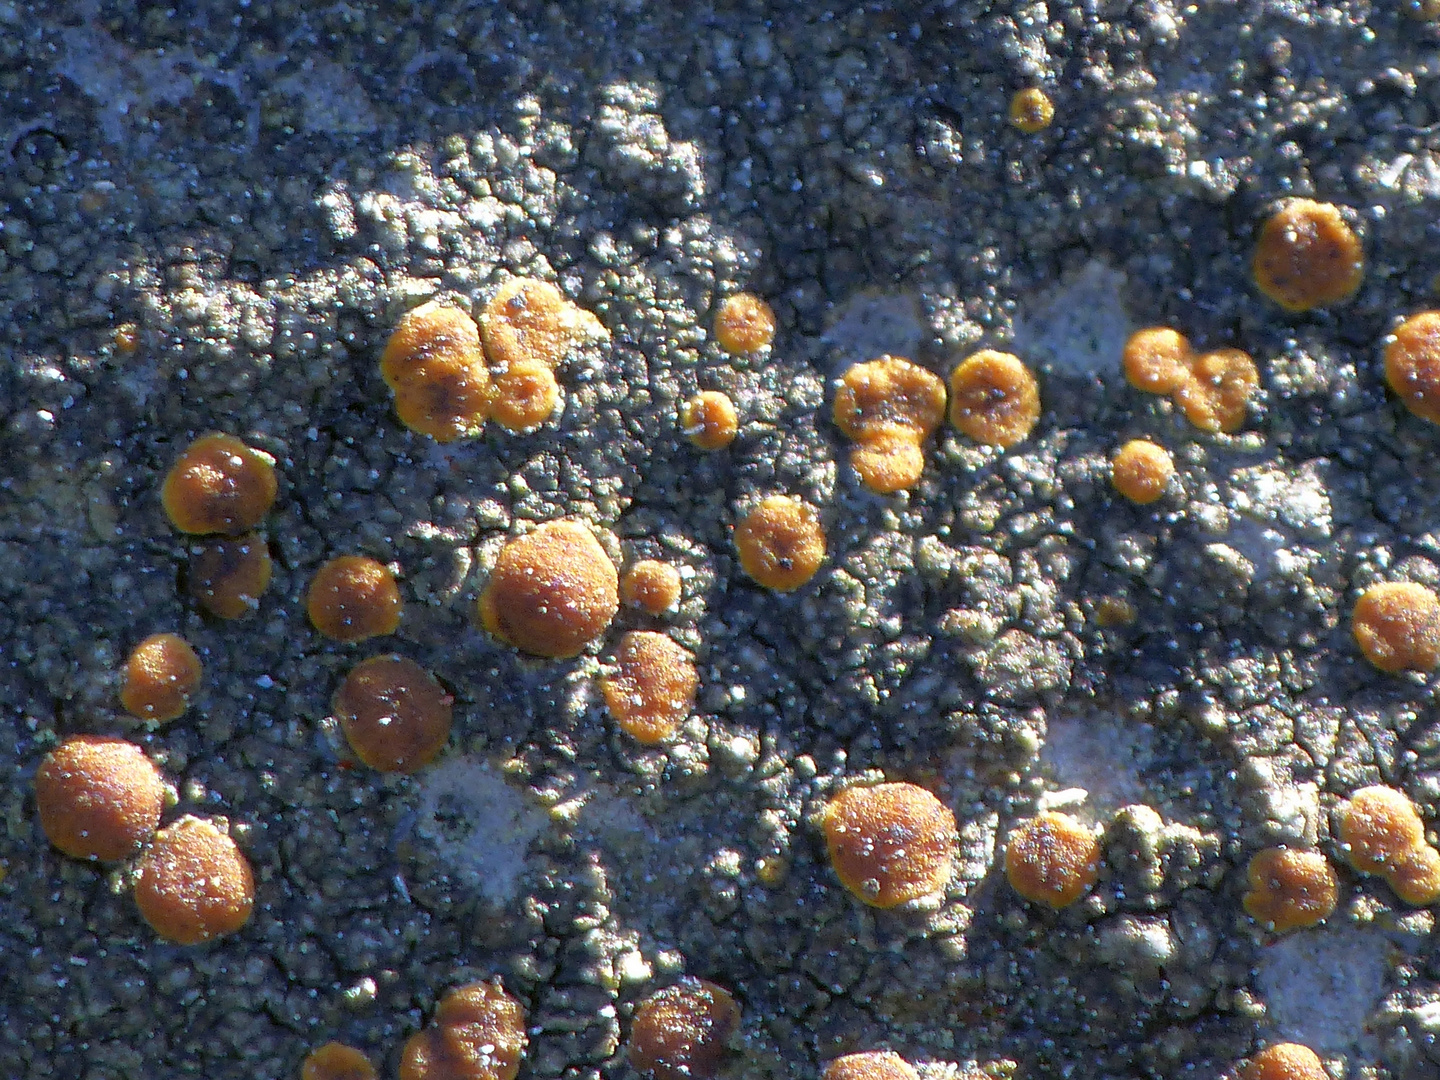 Felsen-Triebflechte (Protoblastenia rupestris) auf Kalkstein